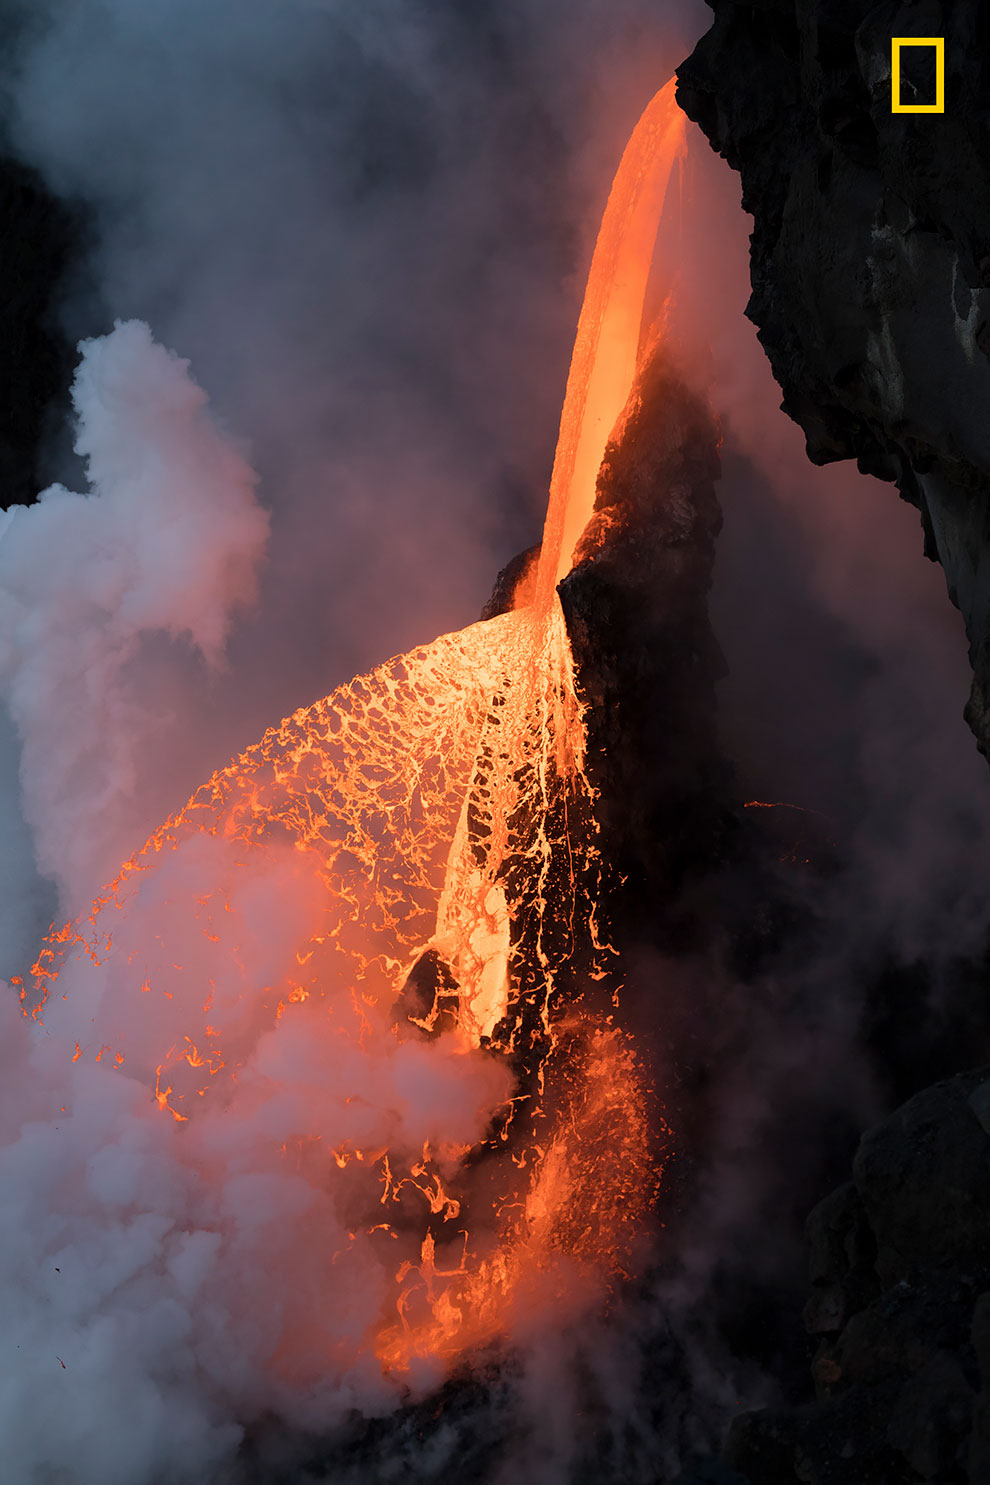 Незадолго до сумерек в Калапане, Гавайи, фрагмент охлажденной лавы откололся, распыляя лавовый поток подобно огненному аэрозолю.